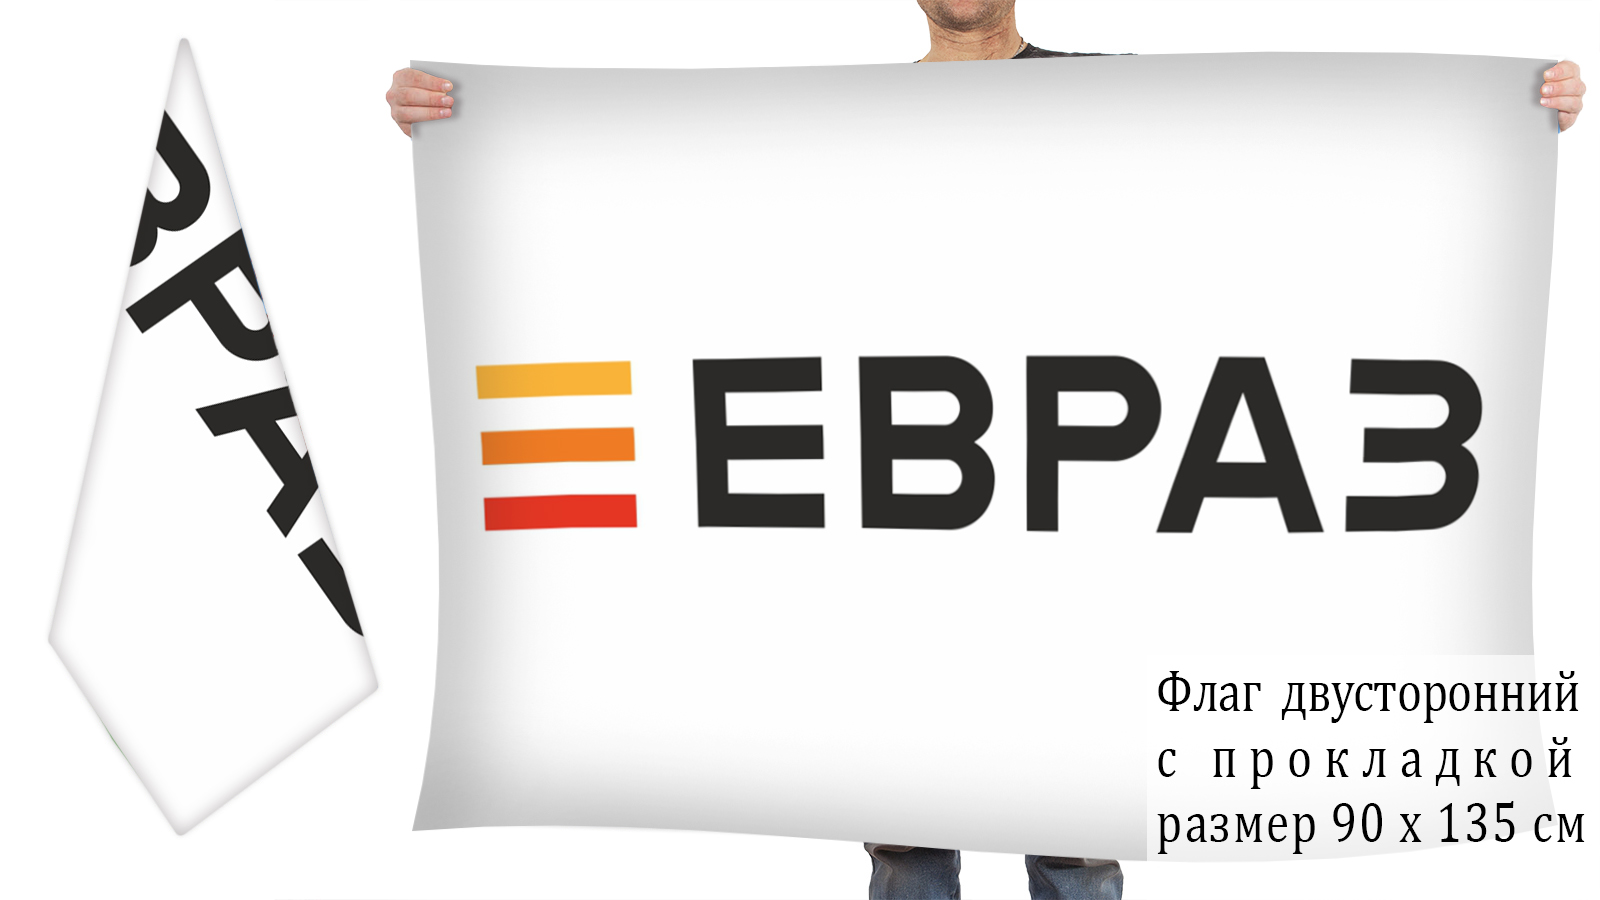 Двусторонний флаг "Евраз"